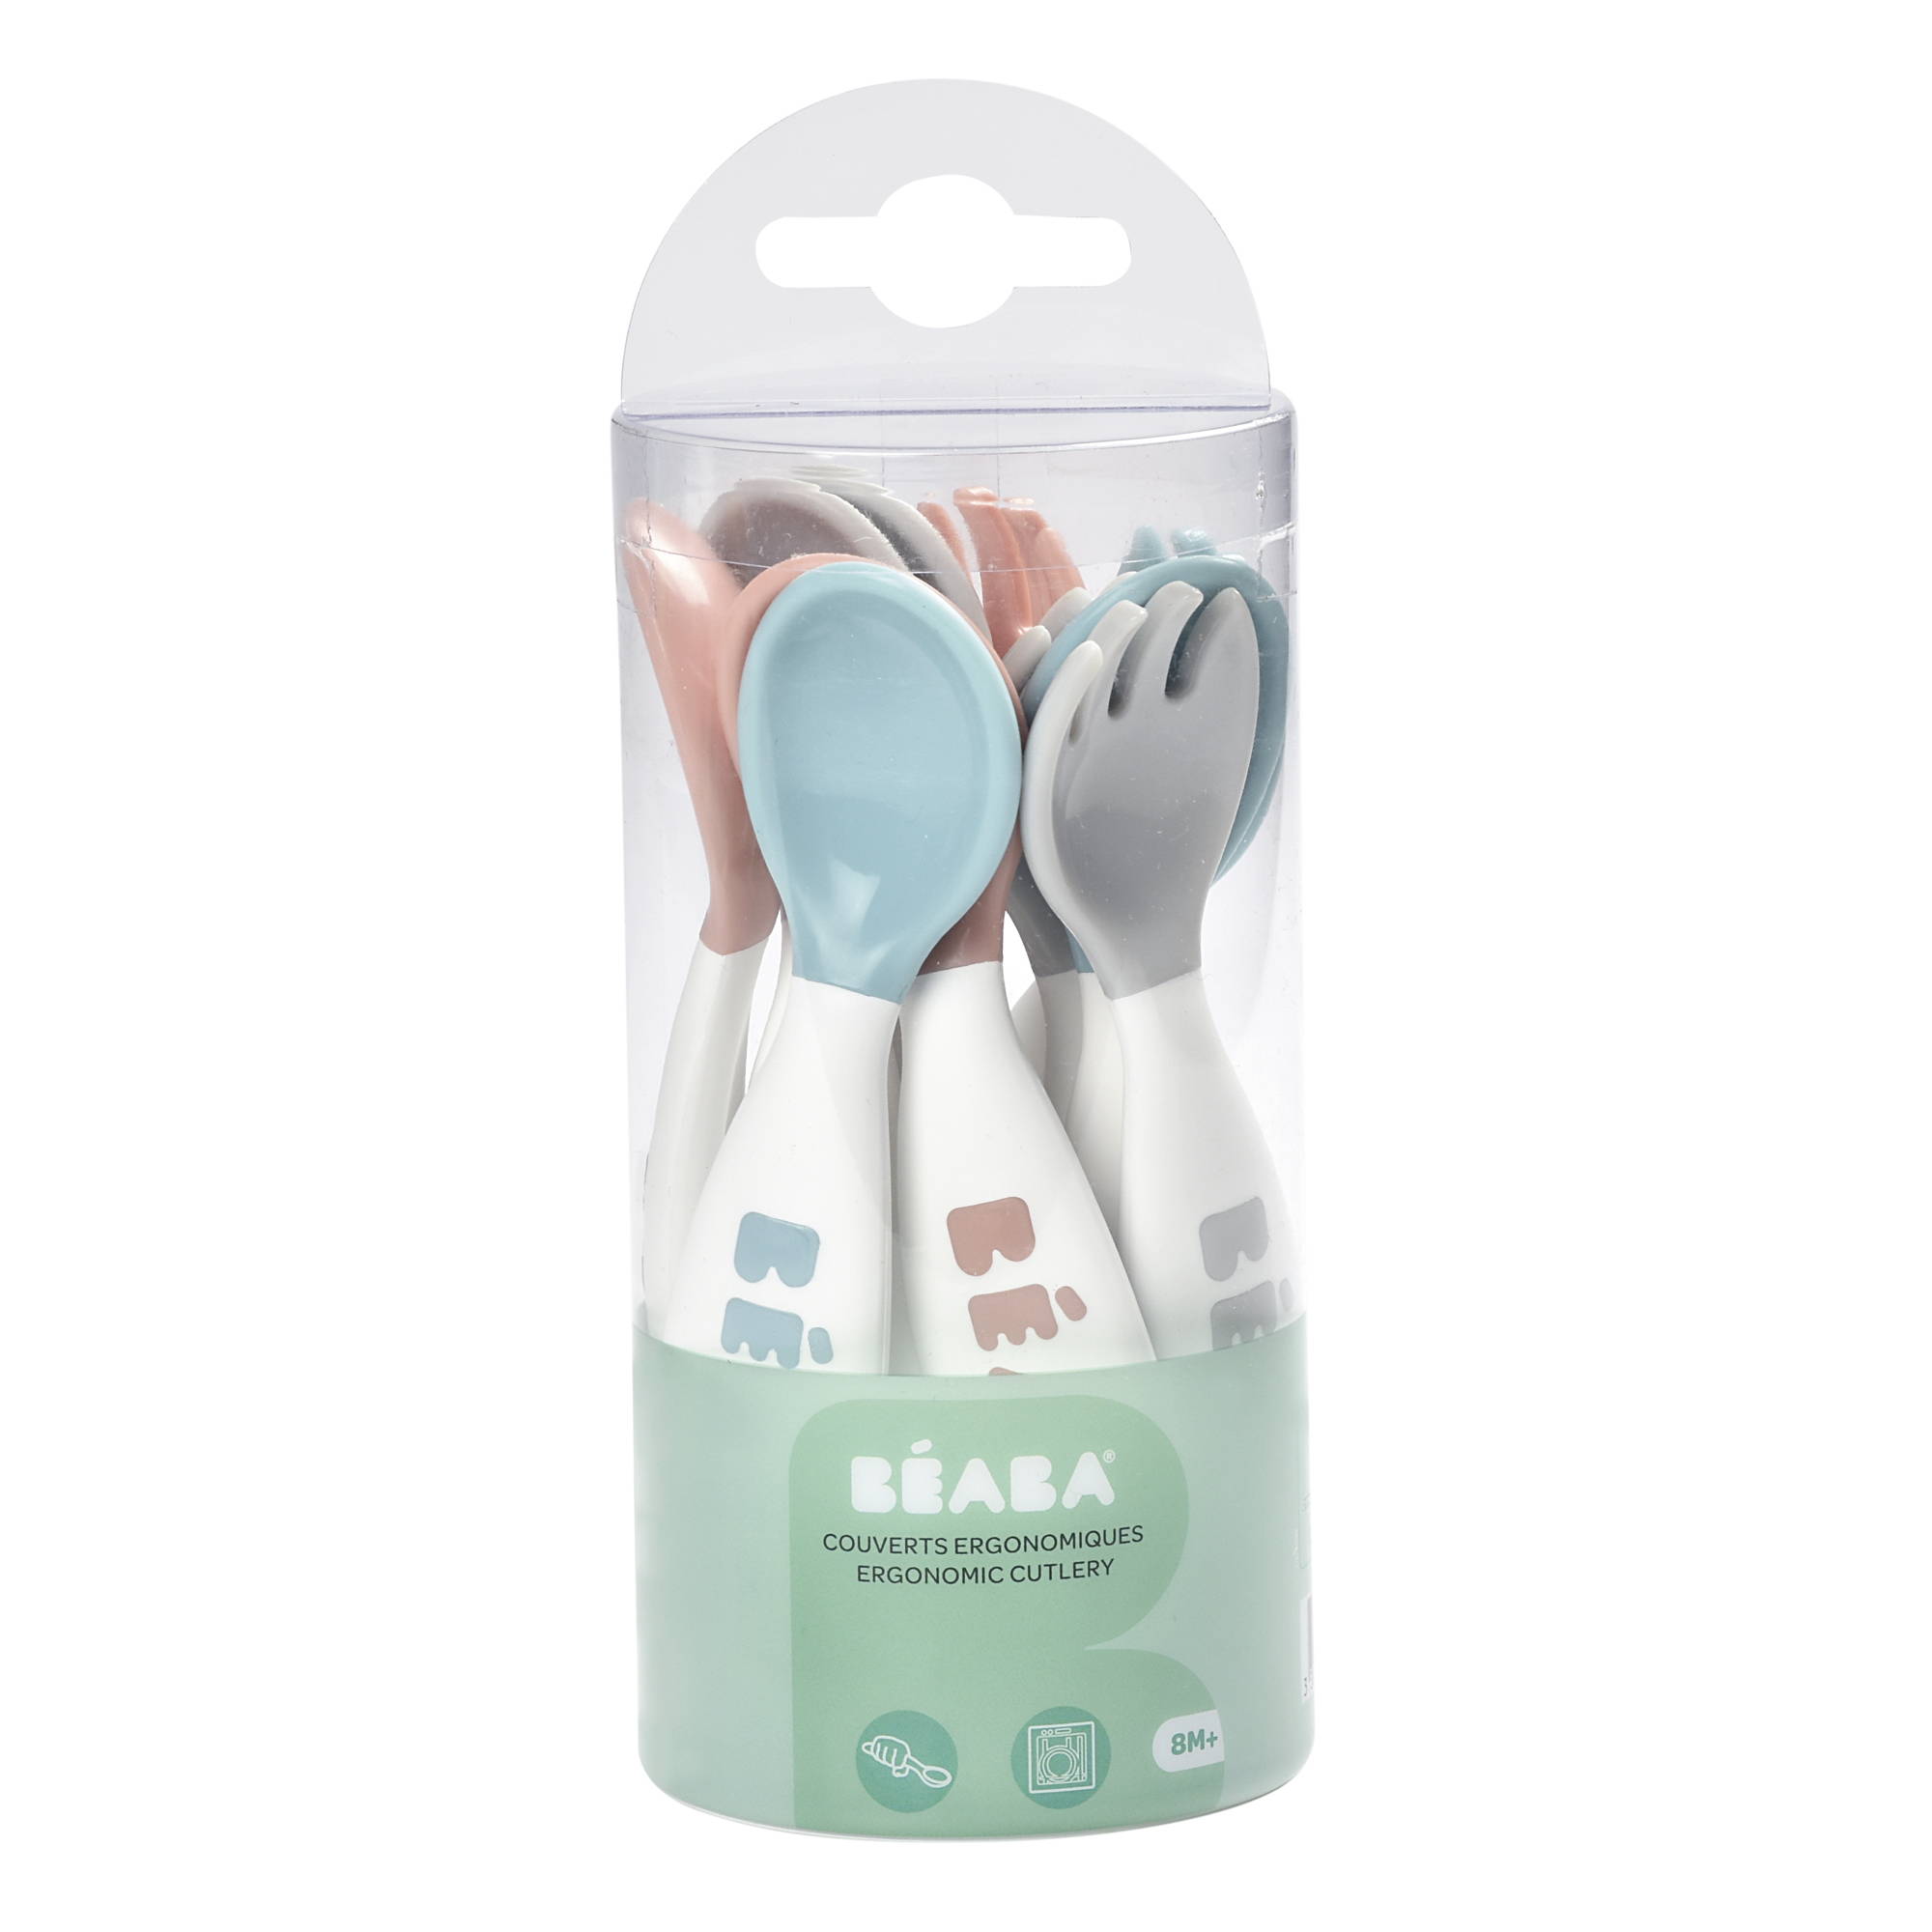 Beaba Training Spoons & Forks